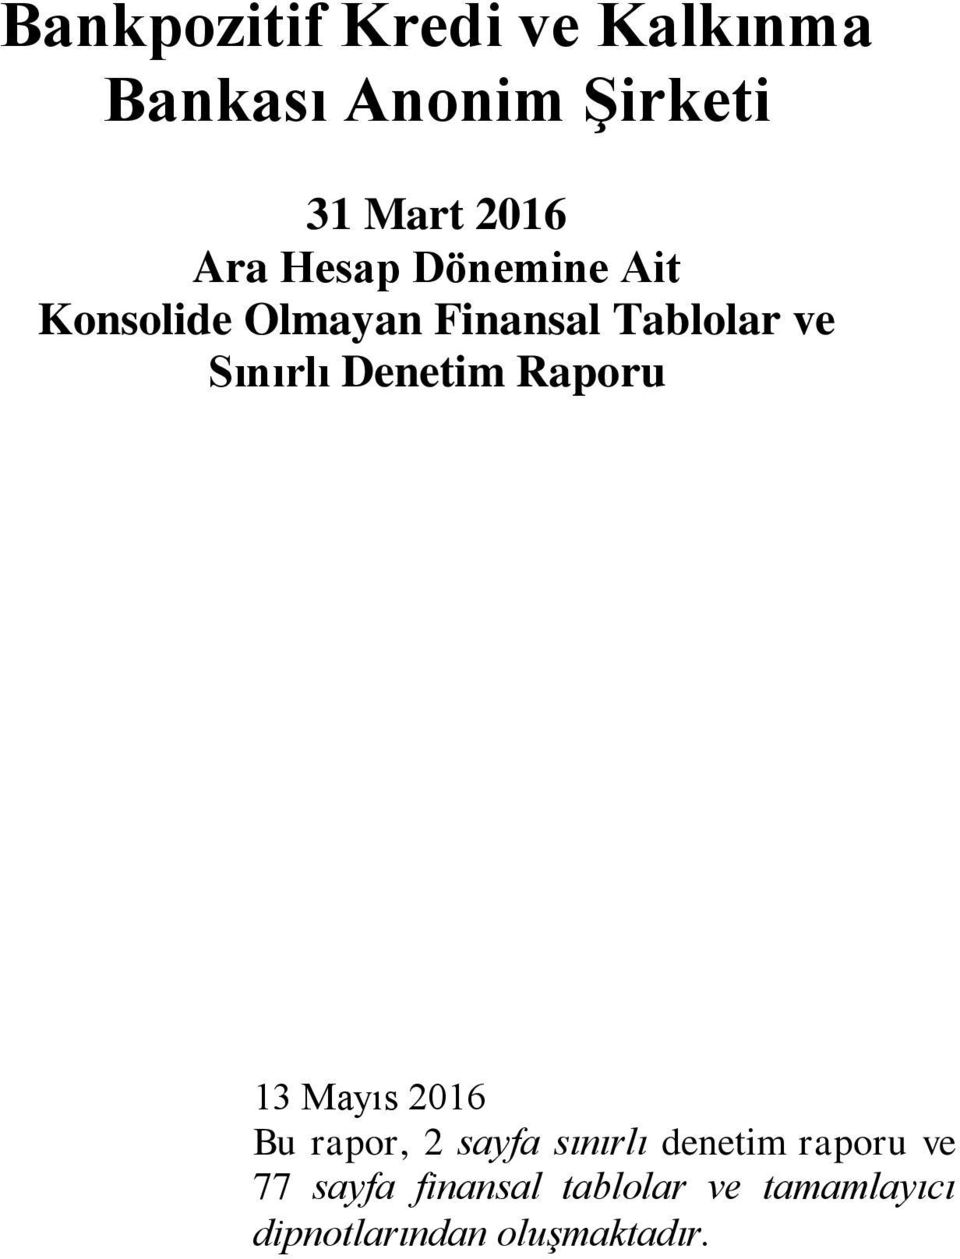 Denetim Raporu 13 Mayıs 2016 Bu rapor, 2 sayfa sınırlı denetim raporu